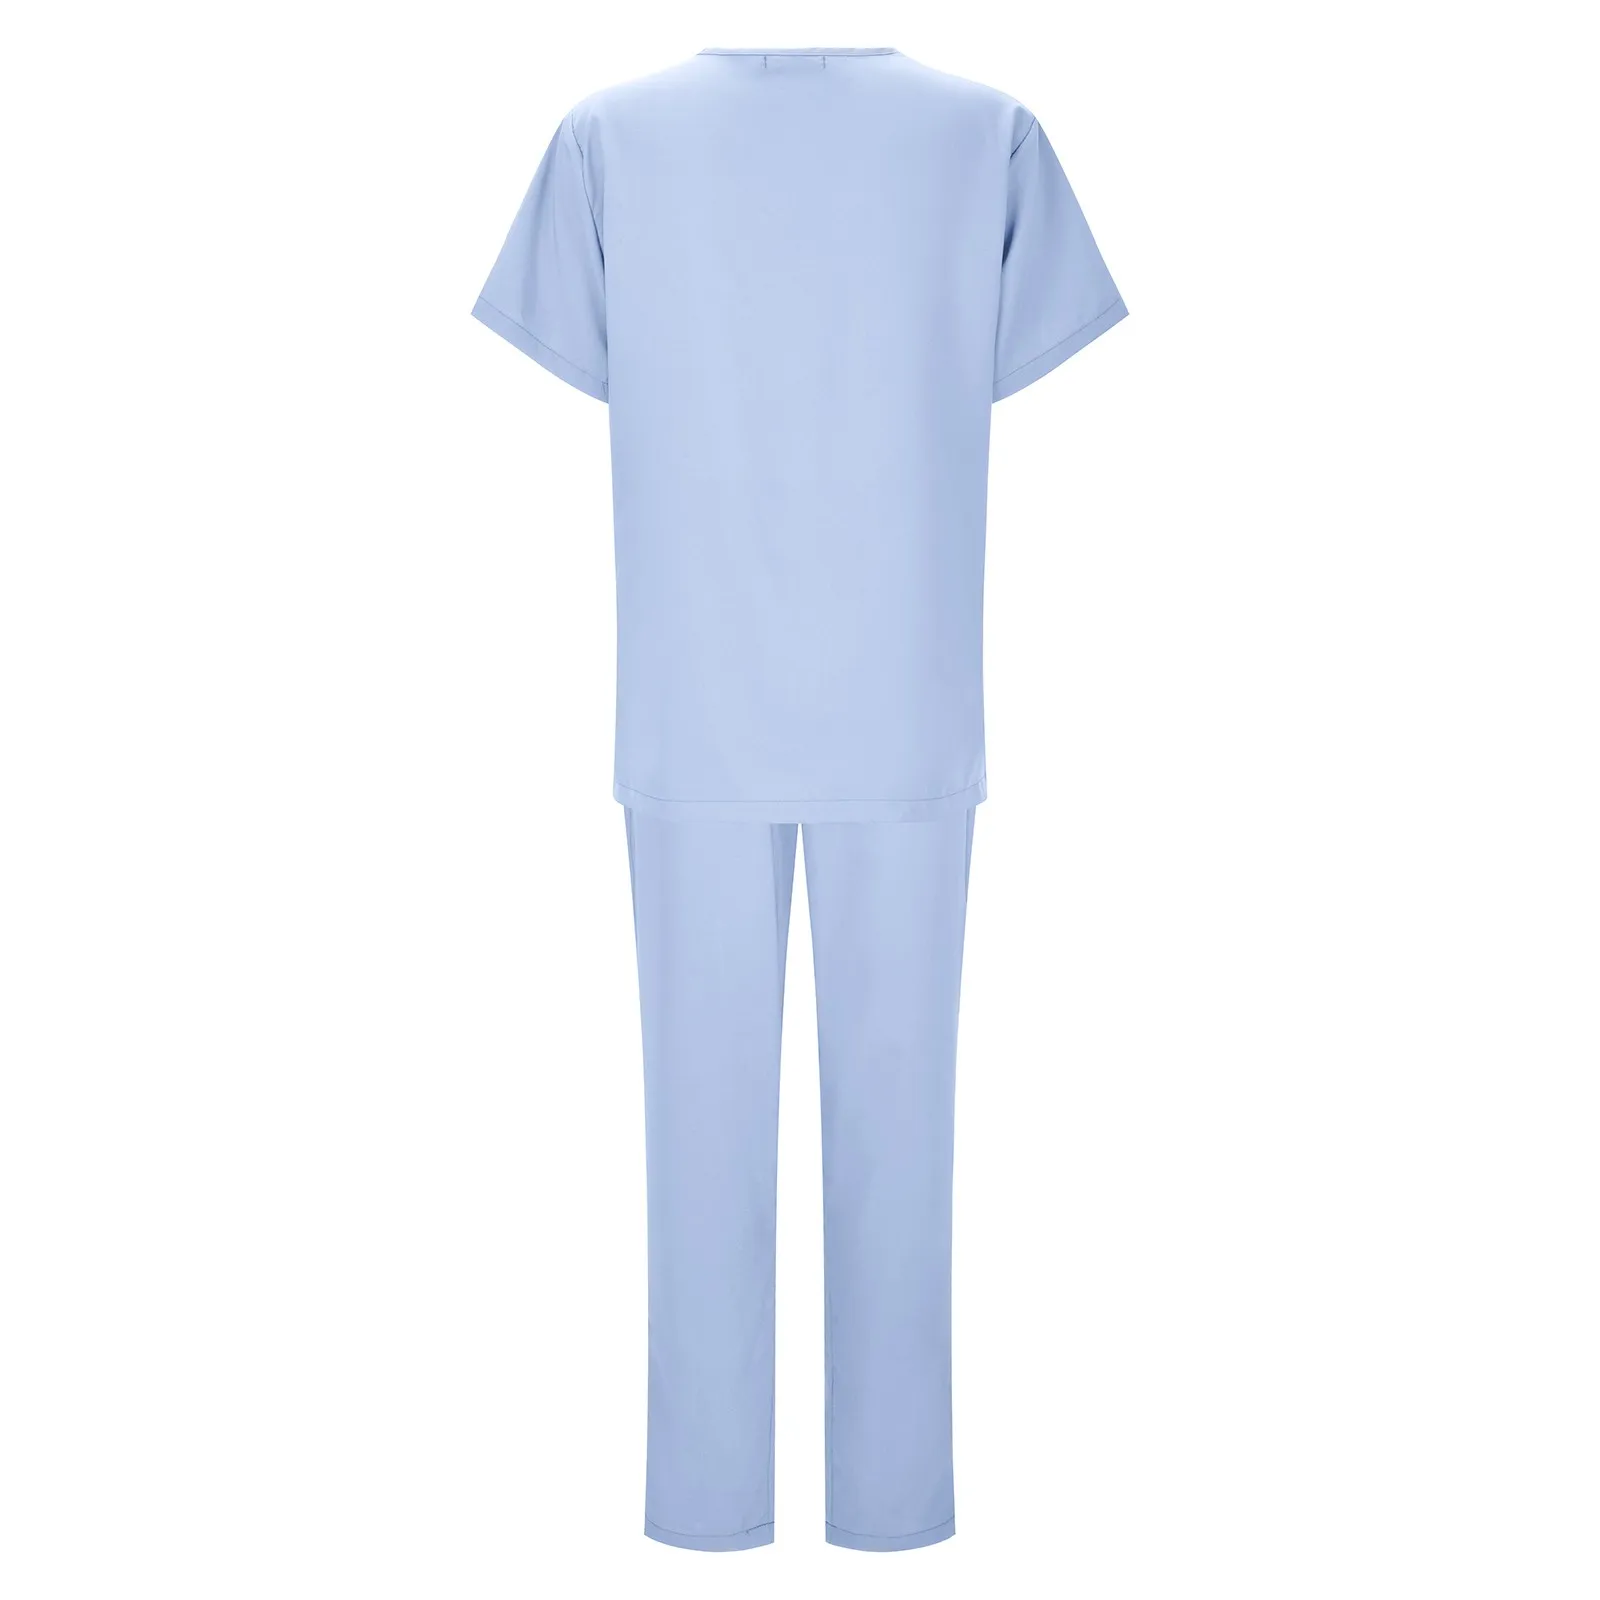 Le donne all'ingrosso indossano tute Scrub medico ospedaliero uniforme da lavoro medico chirurgico multicolore Unisex accessori per infermiere uniformi